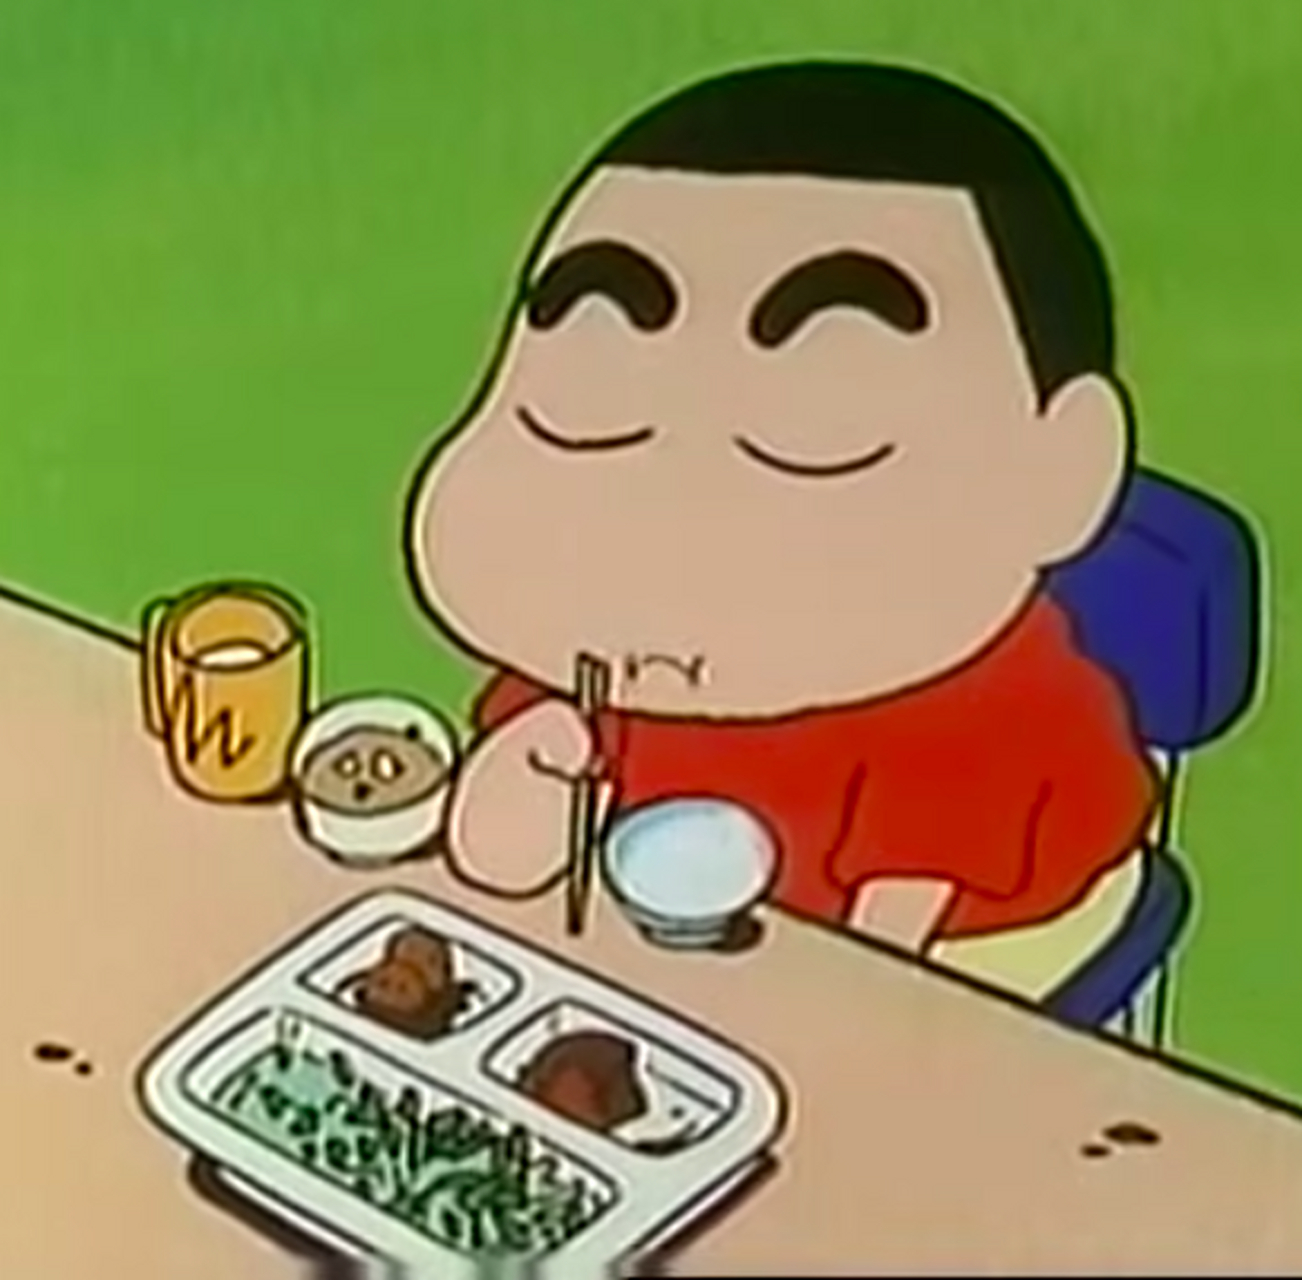 看到蜡笔小新不吃青椒,想起yuzuru也不喜欢彩椒的味道,不少小朋友都不